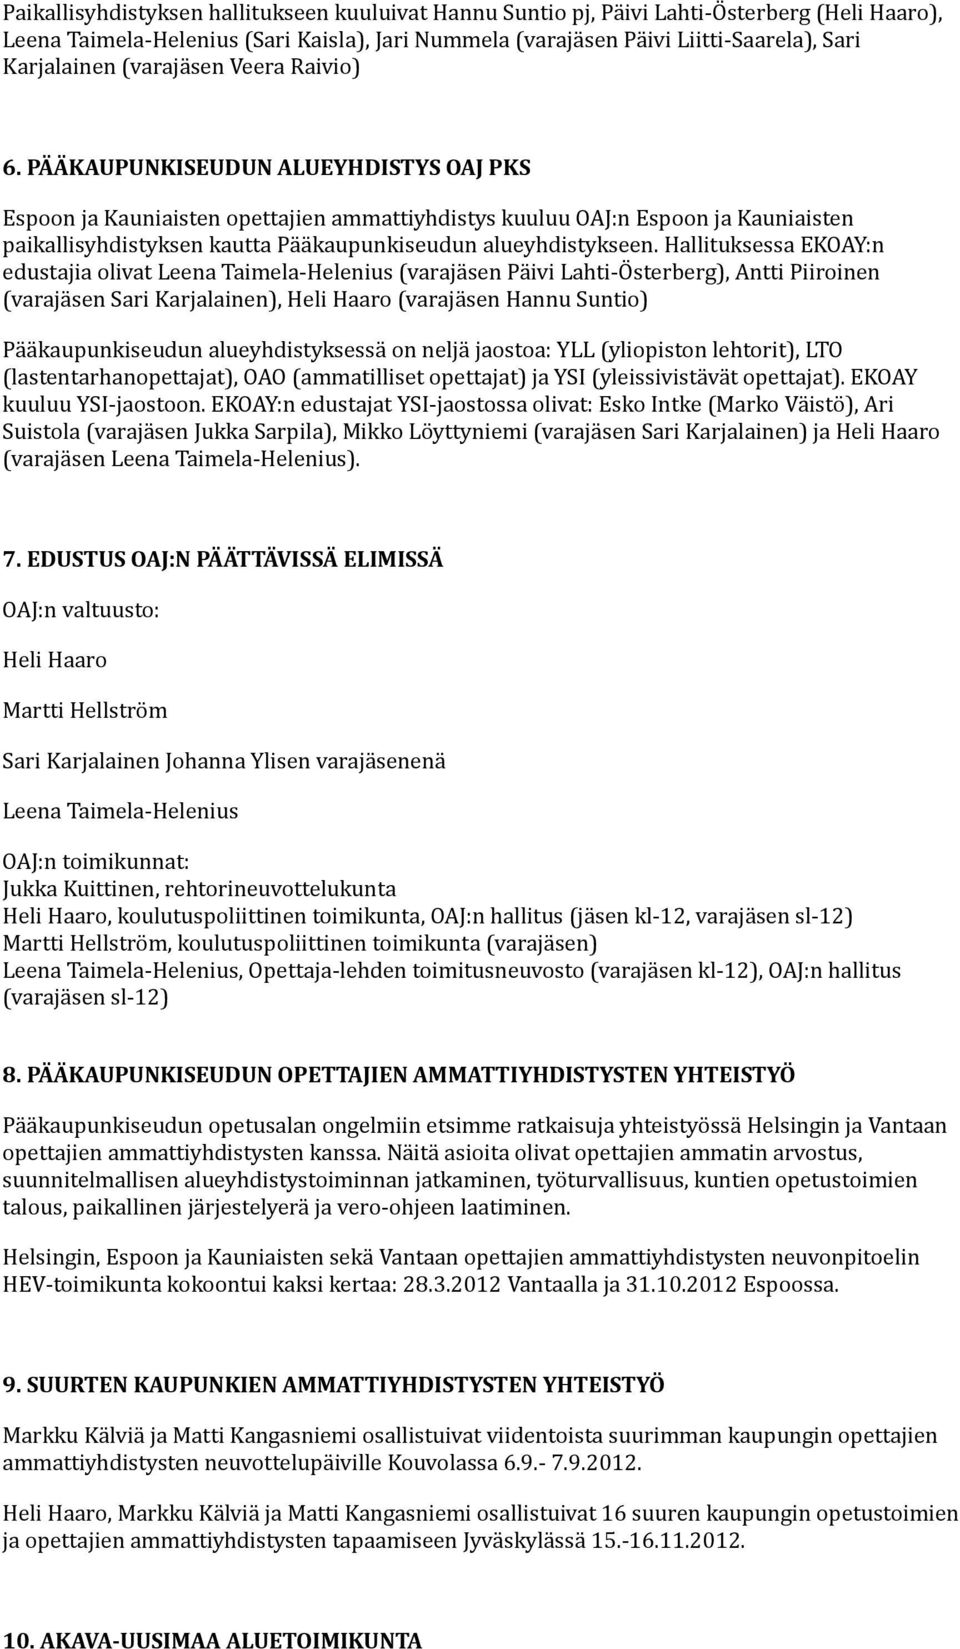 PÄÄKAUPUNKISEUDUN ALUEYHDISTYS OAJ PKS Espoon ja Kauniaisten opettajien ammattiyhdistys kuuluu OAJ:n Espoon ja Kauniaisten paikallisyhdistyksen kautta Pääkaupunkiseudun alueyhdistykseen.